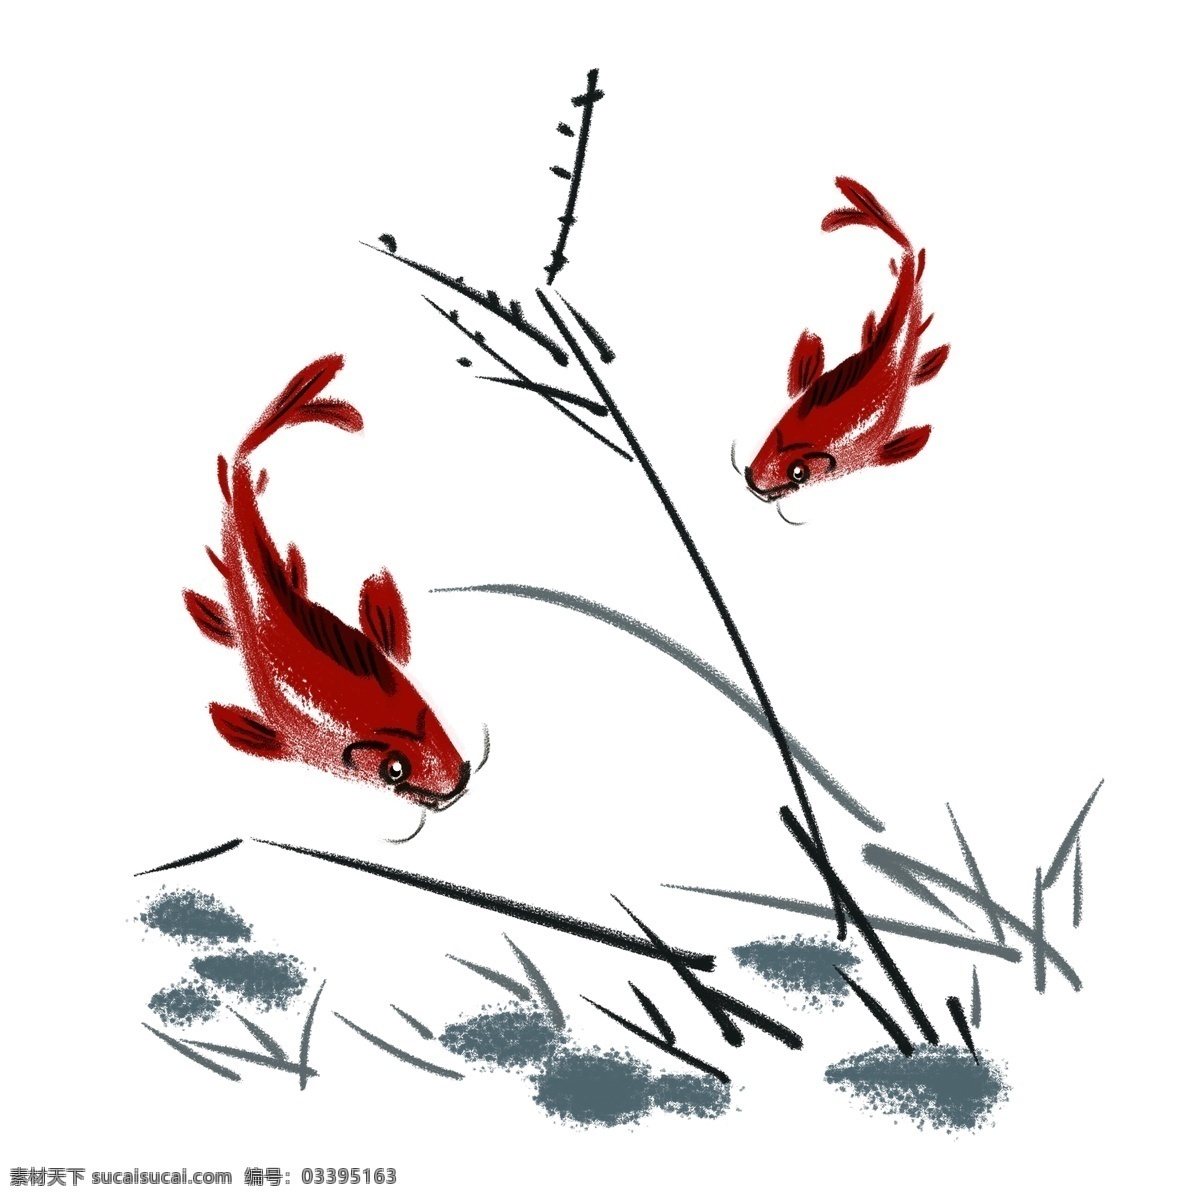 手绘 水墨 鲤鱼 插画 红色的鲤鱼 成对的鲤鱼 漂亮的水墨画 卡通插画 手绘水墨插画 水墨鲤鱼插画